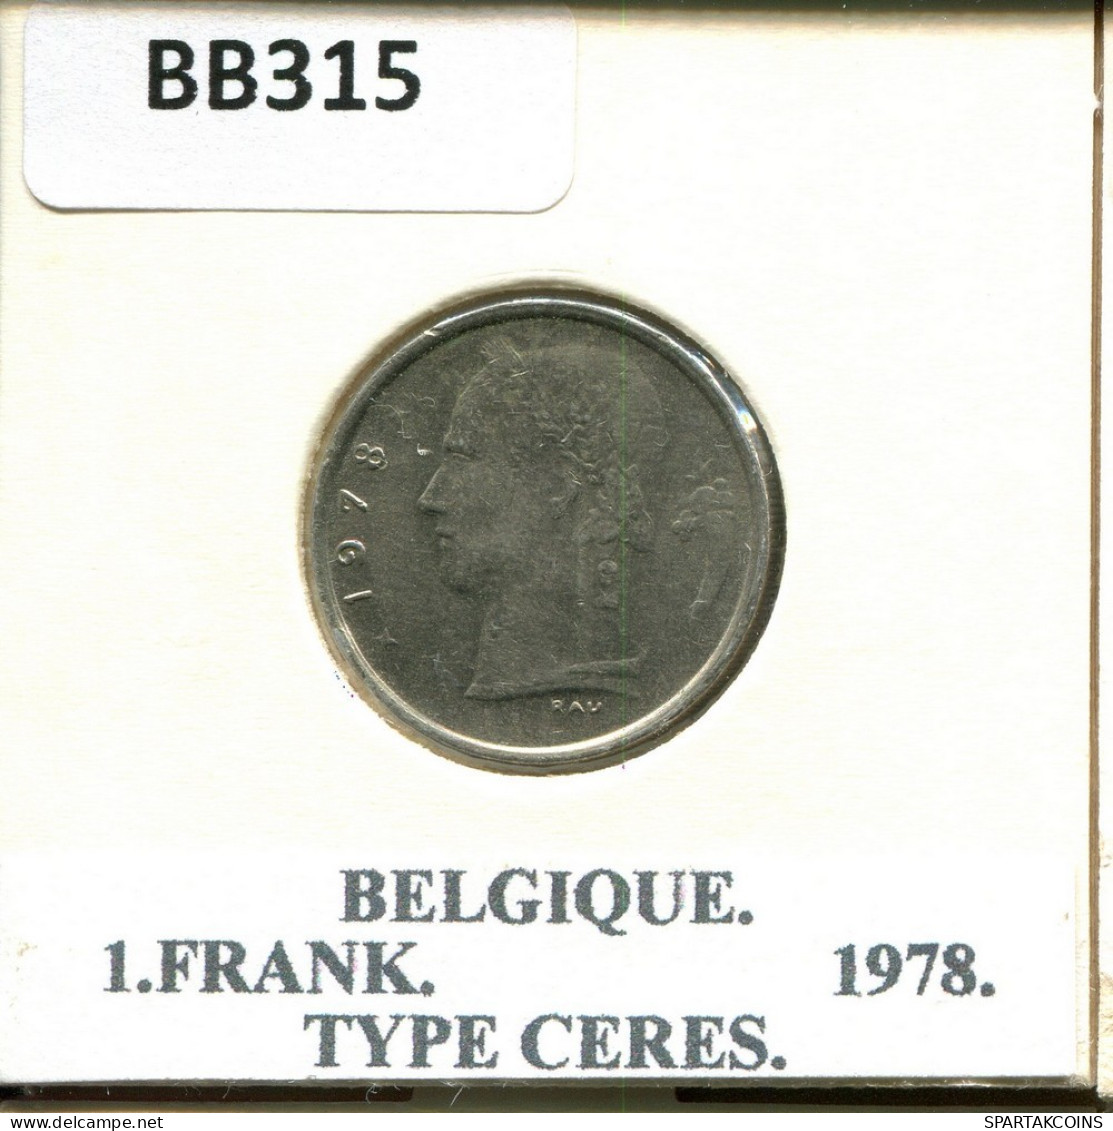 1 FRANC 1978 Französisch Text BELGIEN BELGIUM Münze #BB315.D.A - 1 Franc